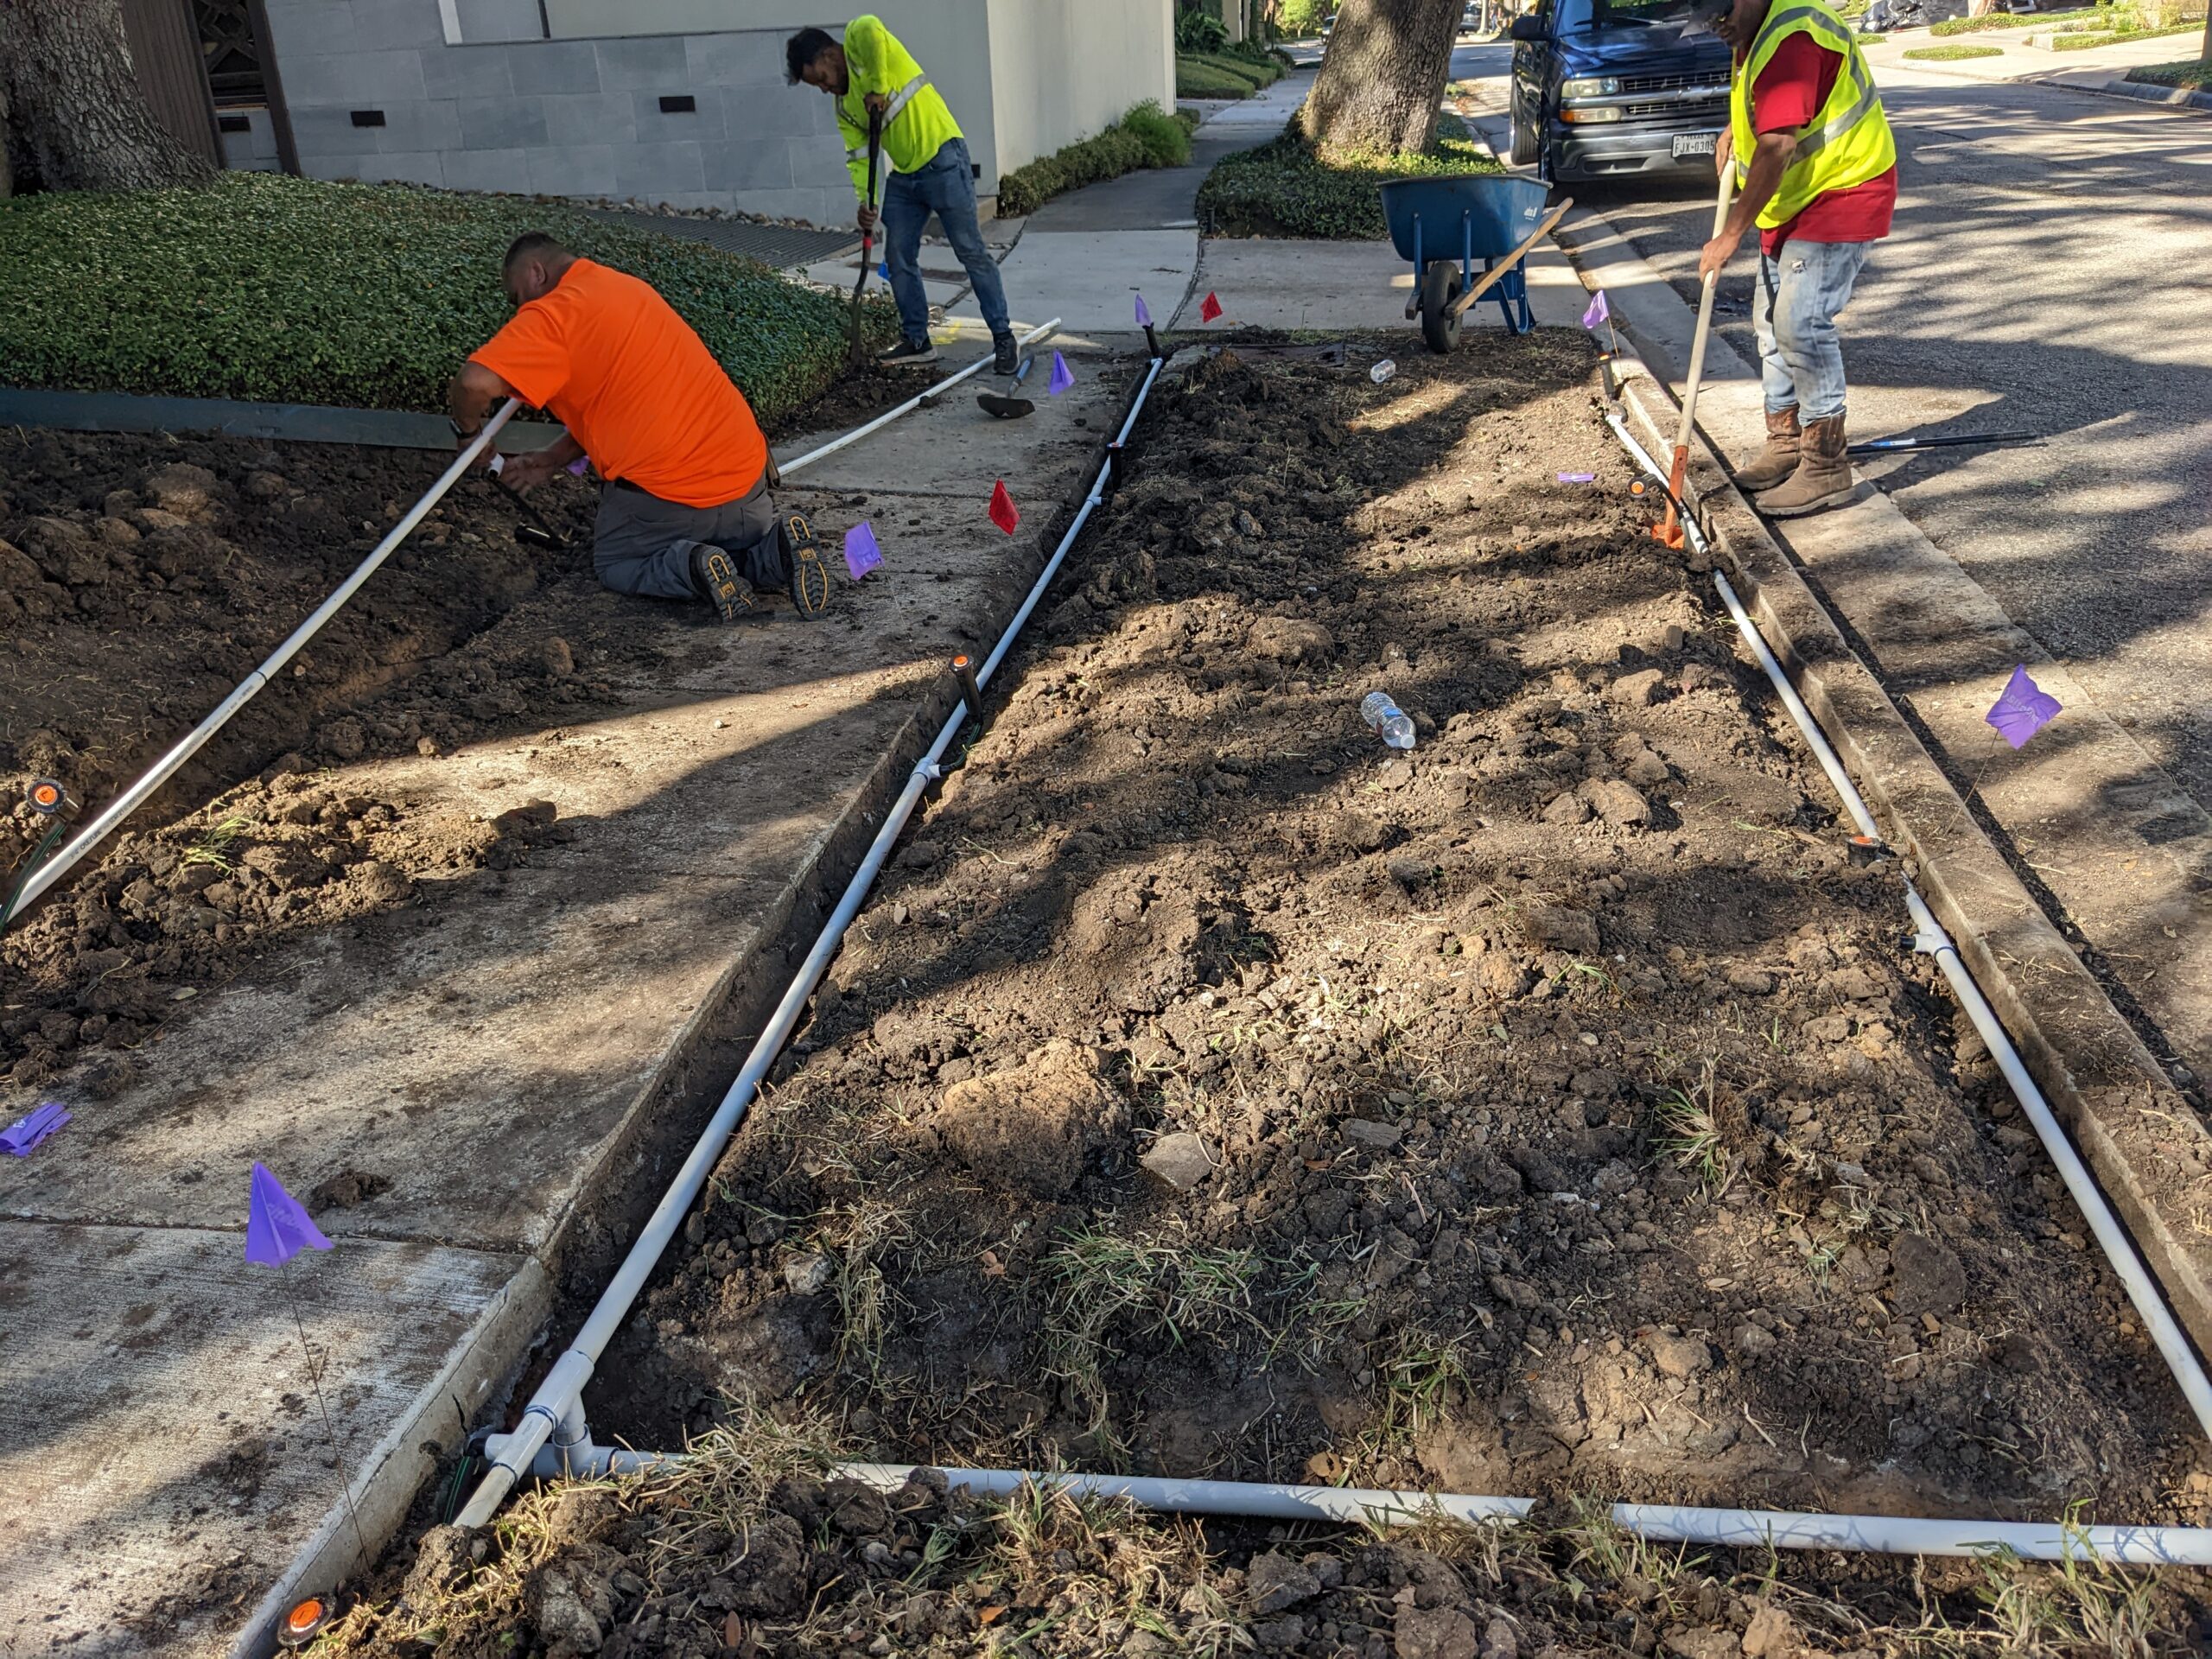 Workers digging up ground for sprinkler installation